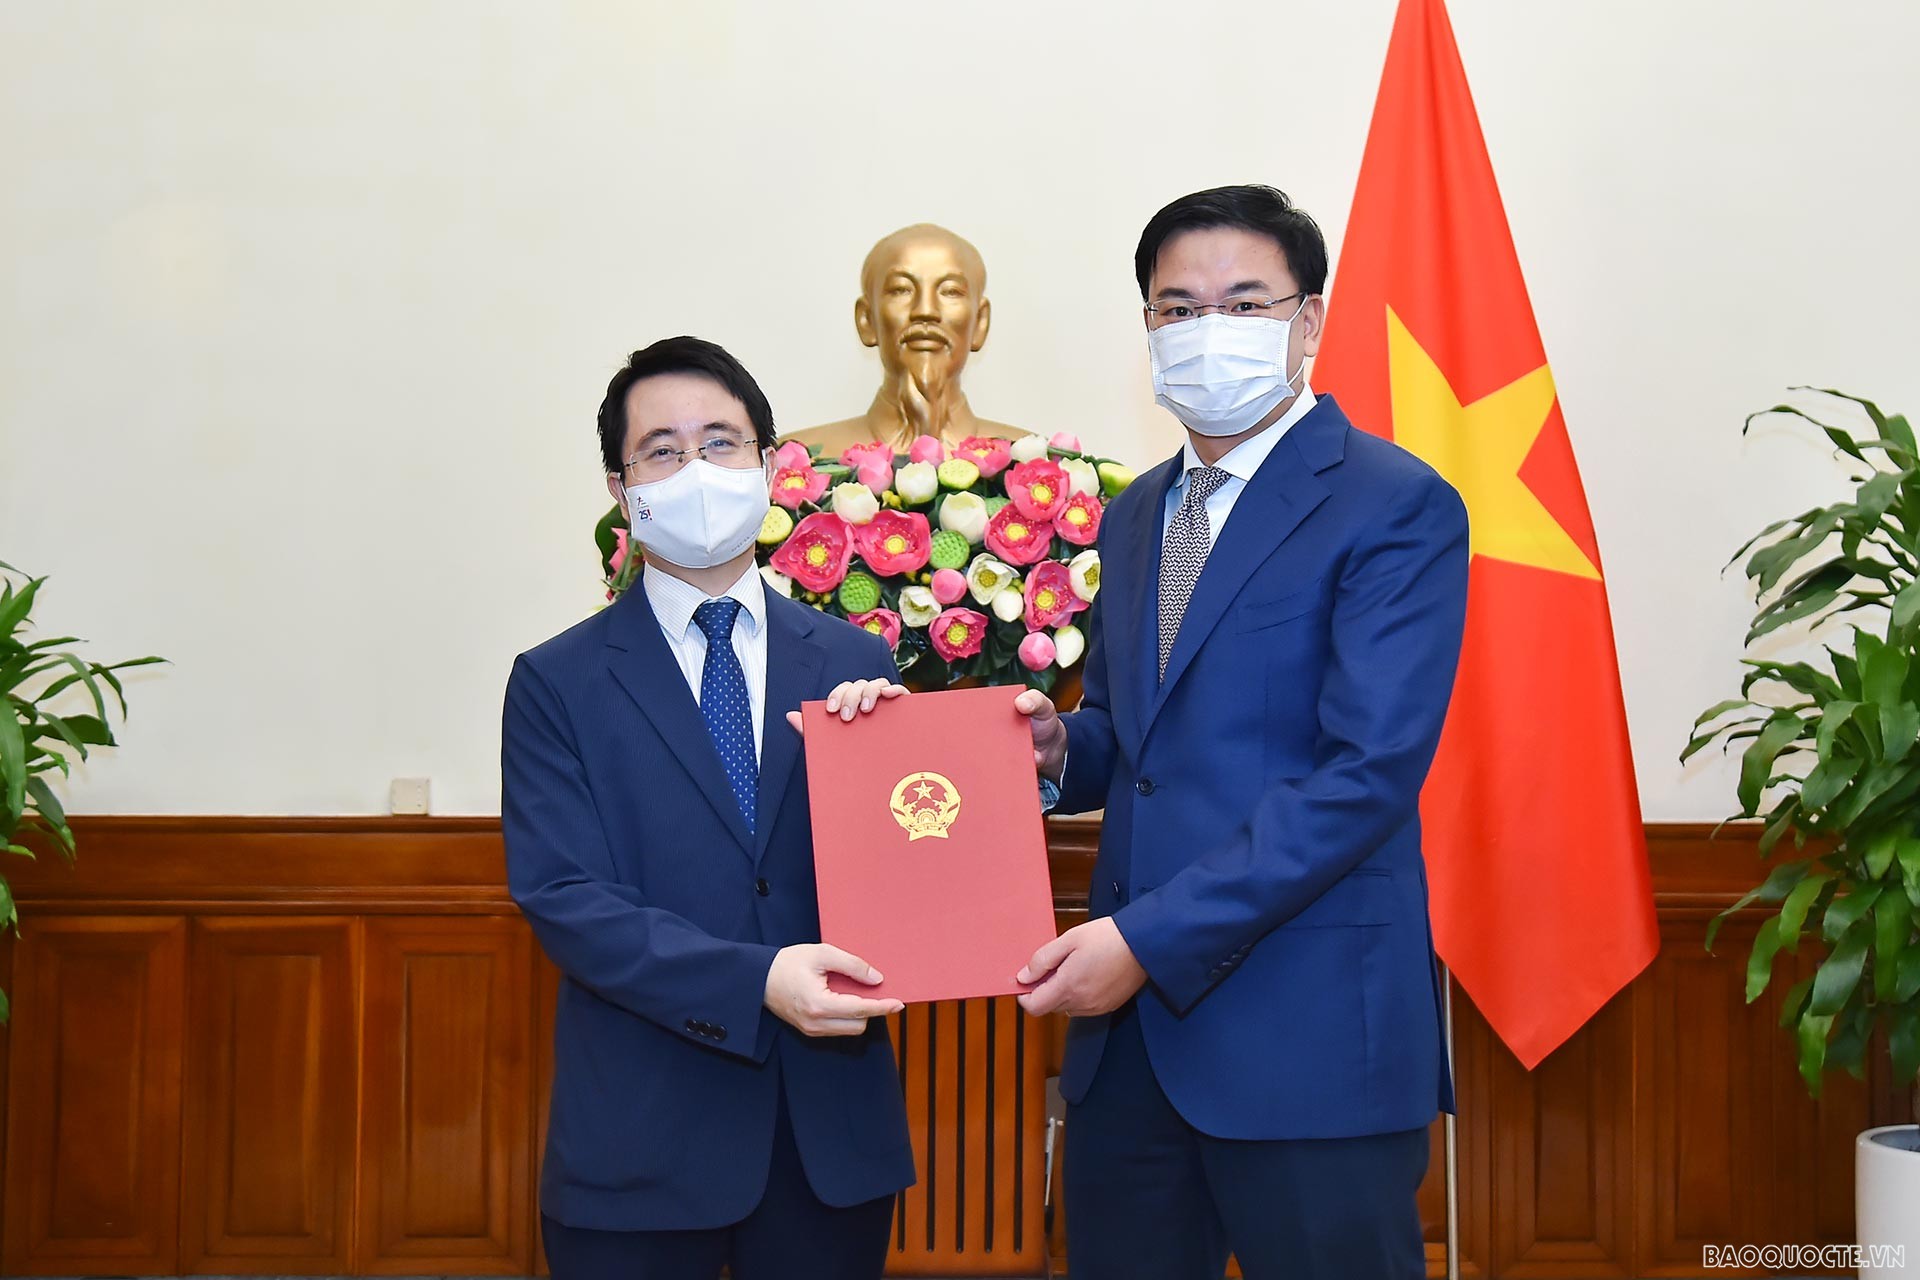 Thứ trưởng Ngoại giao Phạm Quang Hiệu đã trao quyết định điều động ông Trần Anh Vũ, Phó Vụ trưởng Vụ Hợp tác kinh tế đa phương làm Phó Vụ trưởng Vụ Tổng hợp kinh tế.